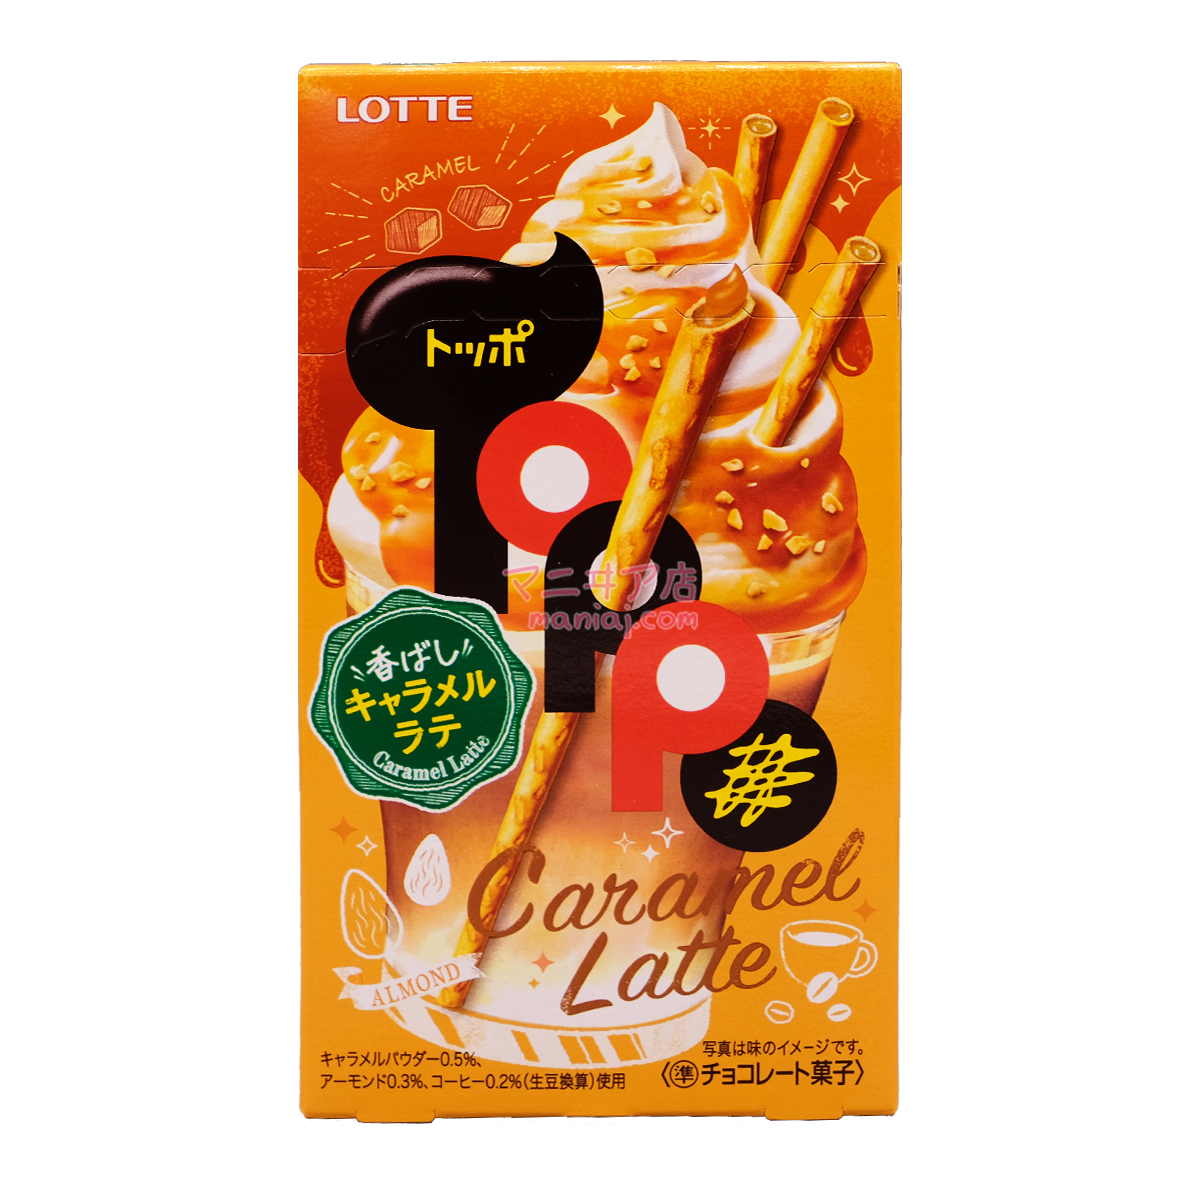 Fragrant Caramel Coffee Milk Flavor Toppo